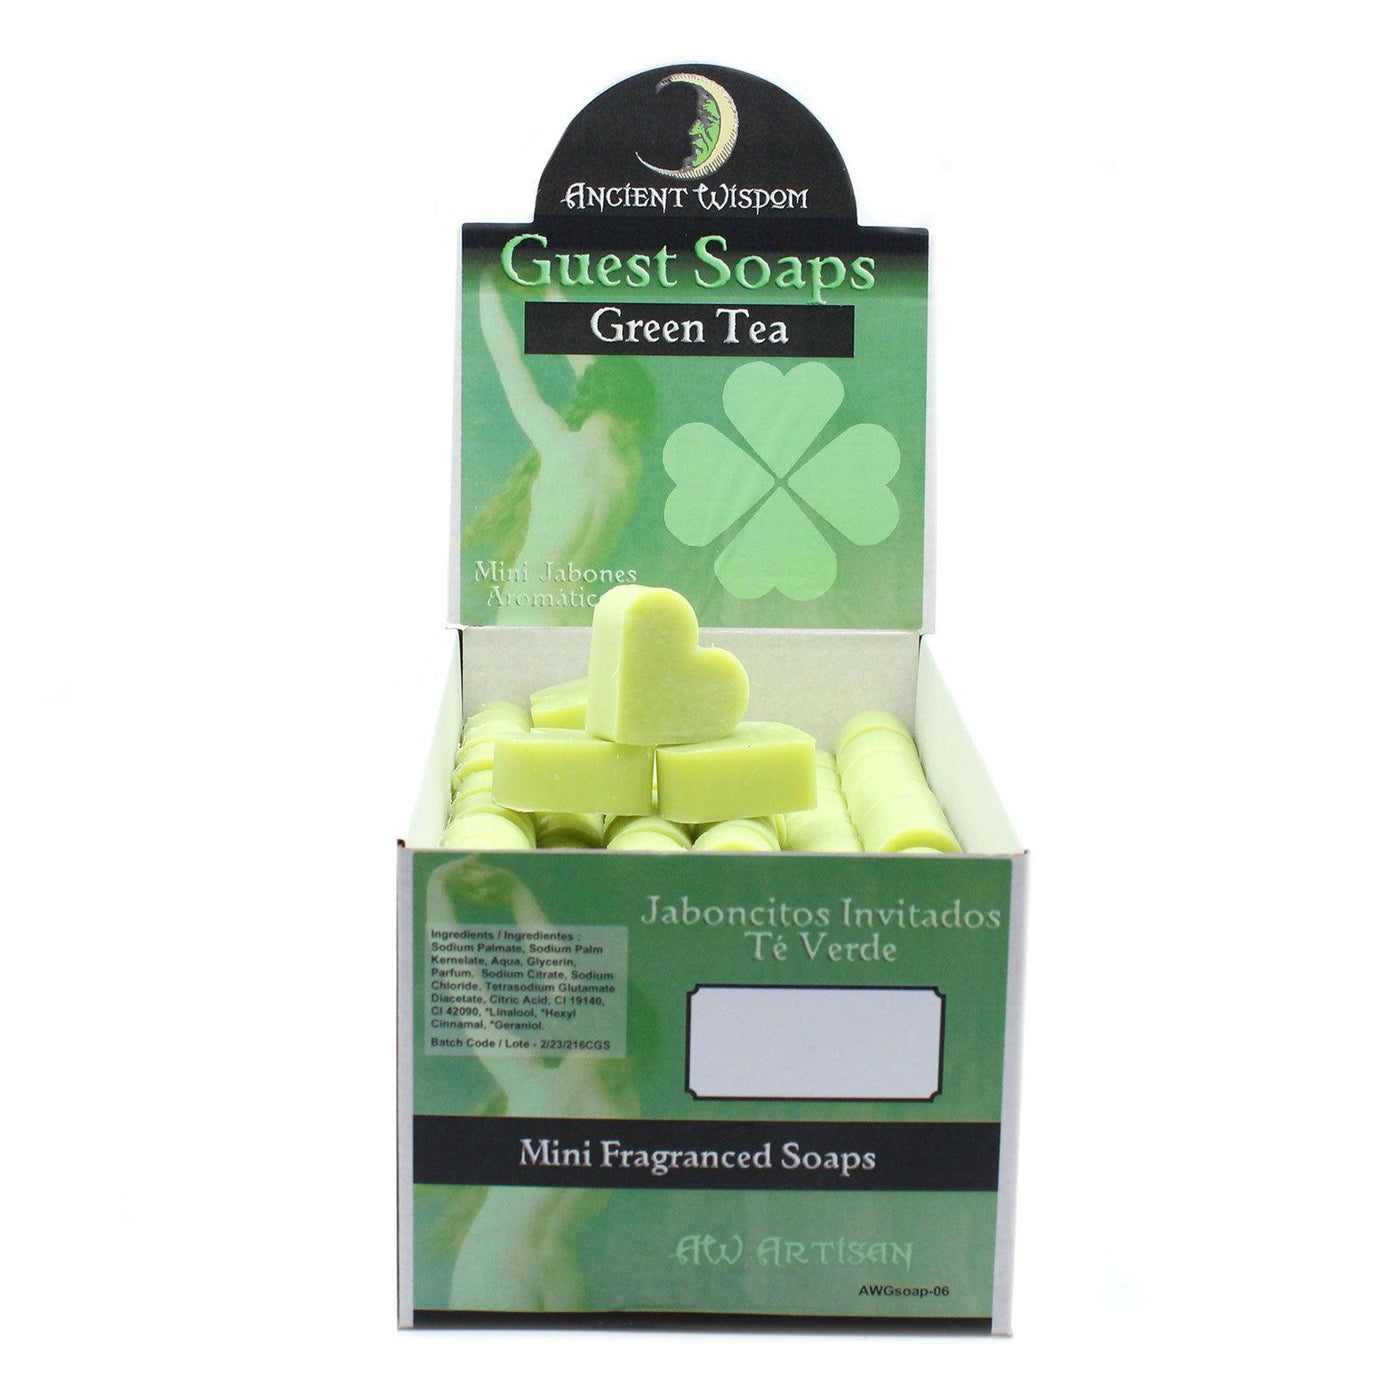 10x Green Heart Shaped Paraben Free Guest Soap - Green Tea.